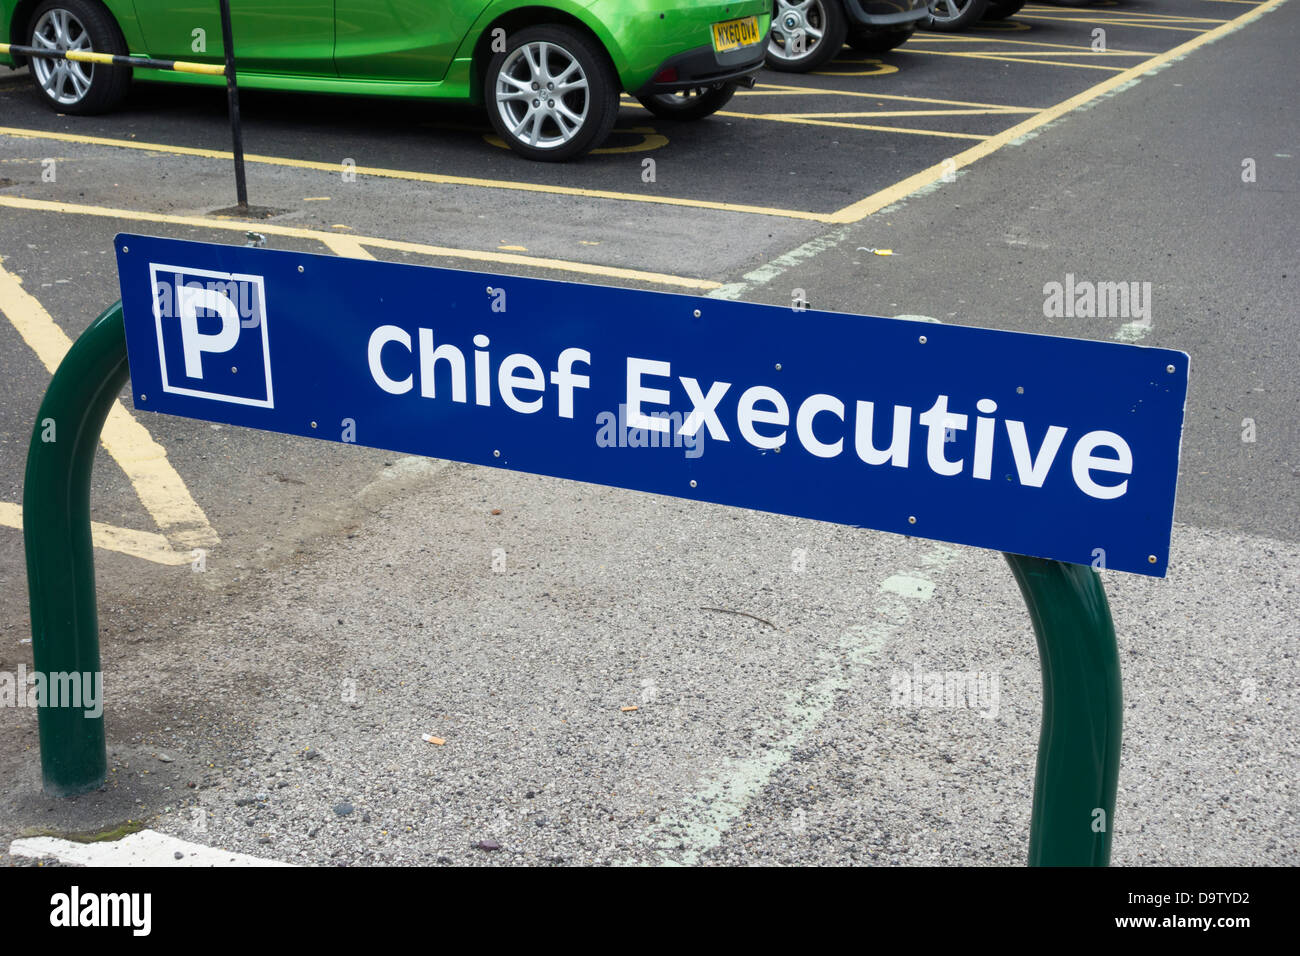 Jefe Ejecutivo espacio de aparcamiento en el Hospital del NHS, Inglaterra, Reino Unido. Foto de stock